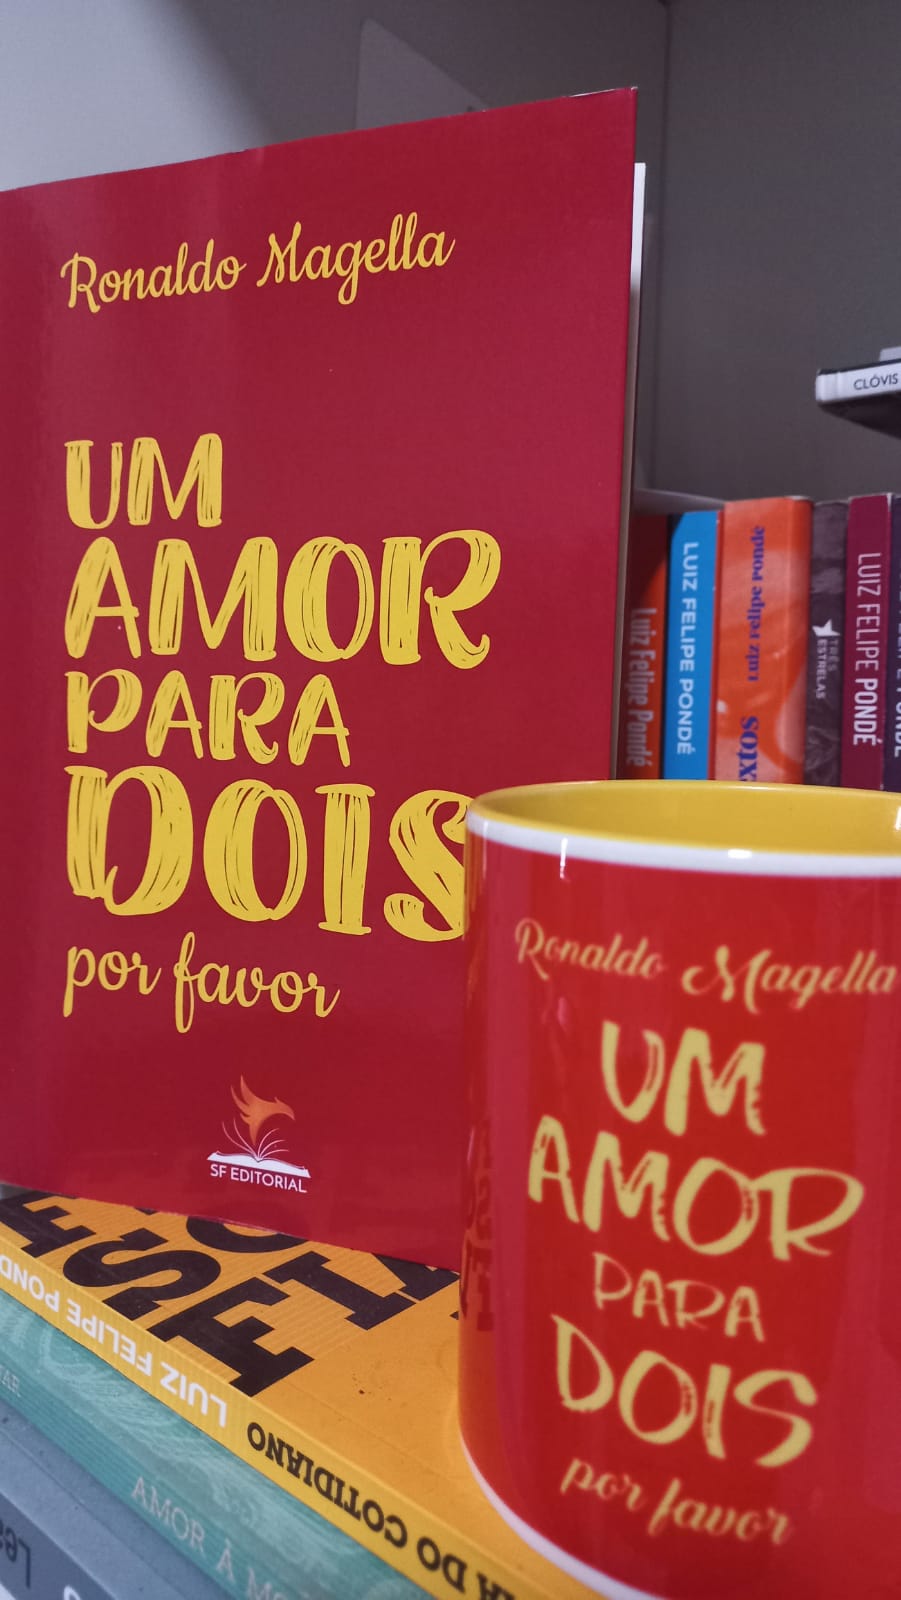 Um amor para dois, jornalista e escritor Ronaldo Magella lança sexto livro de crônicas nesta sexta-feira